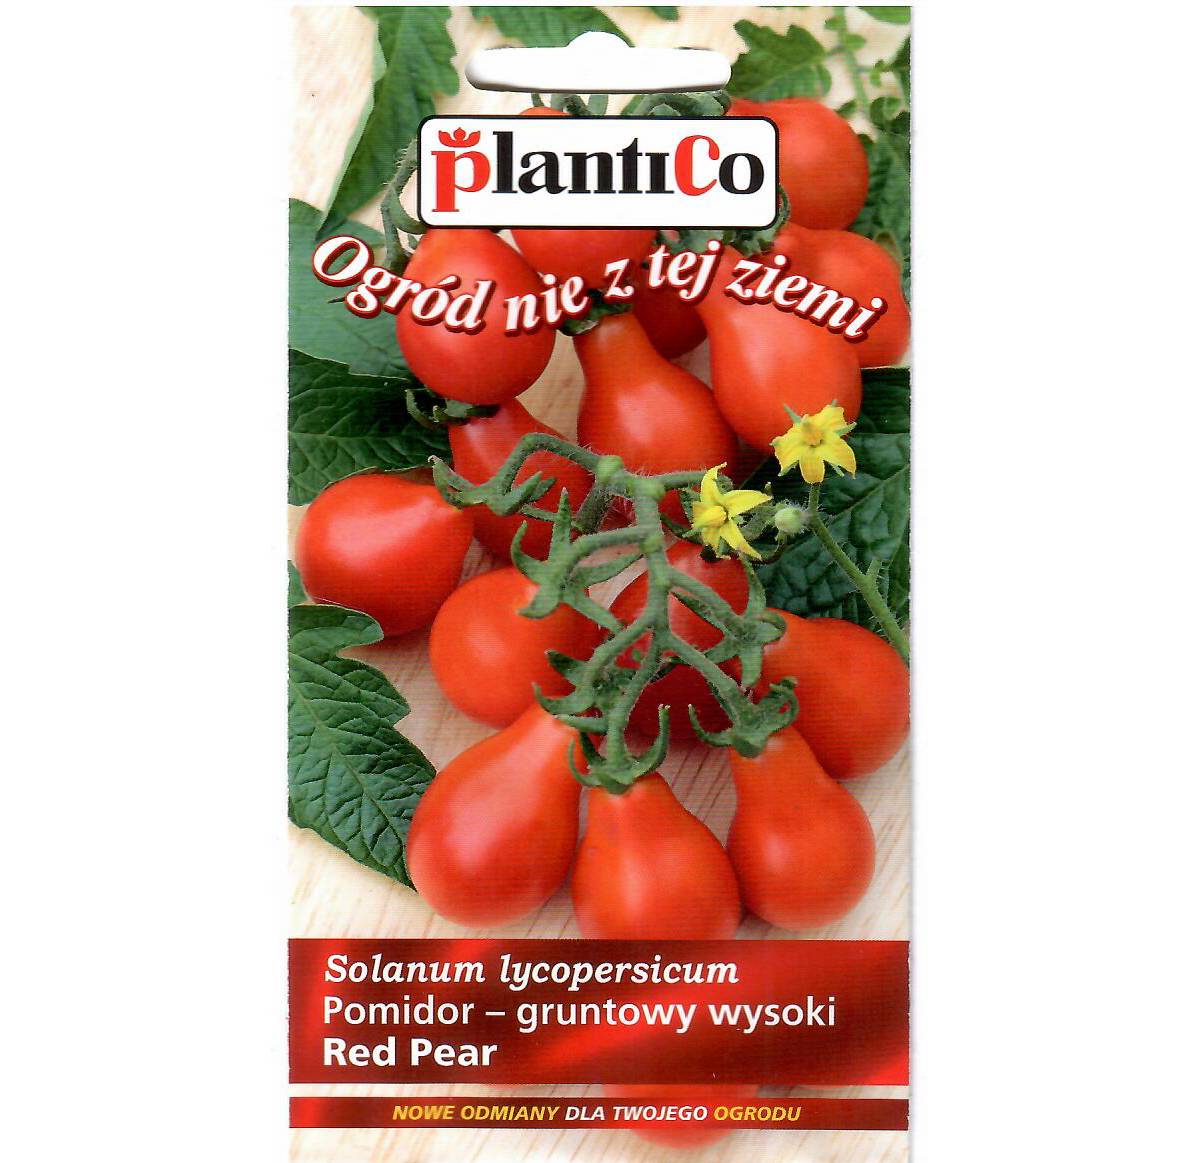 Простой в уходе и нескупой на урожаи томат — курносик: отзывы и описание сорта